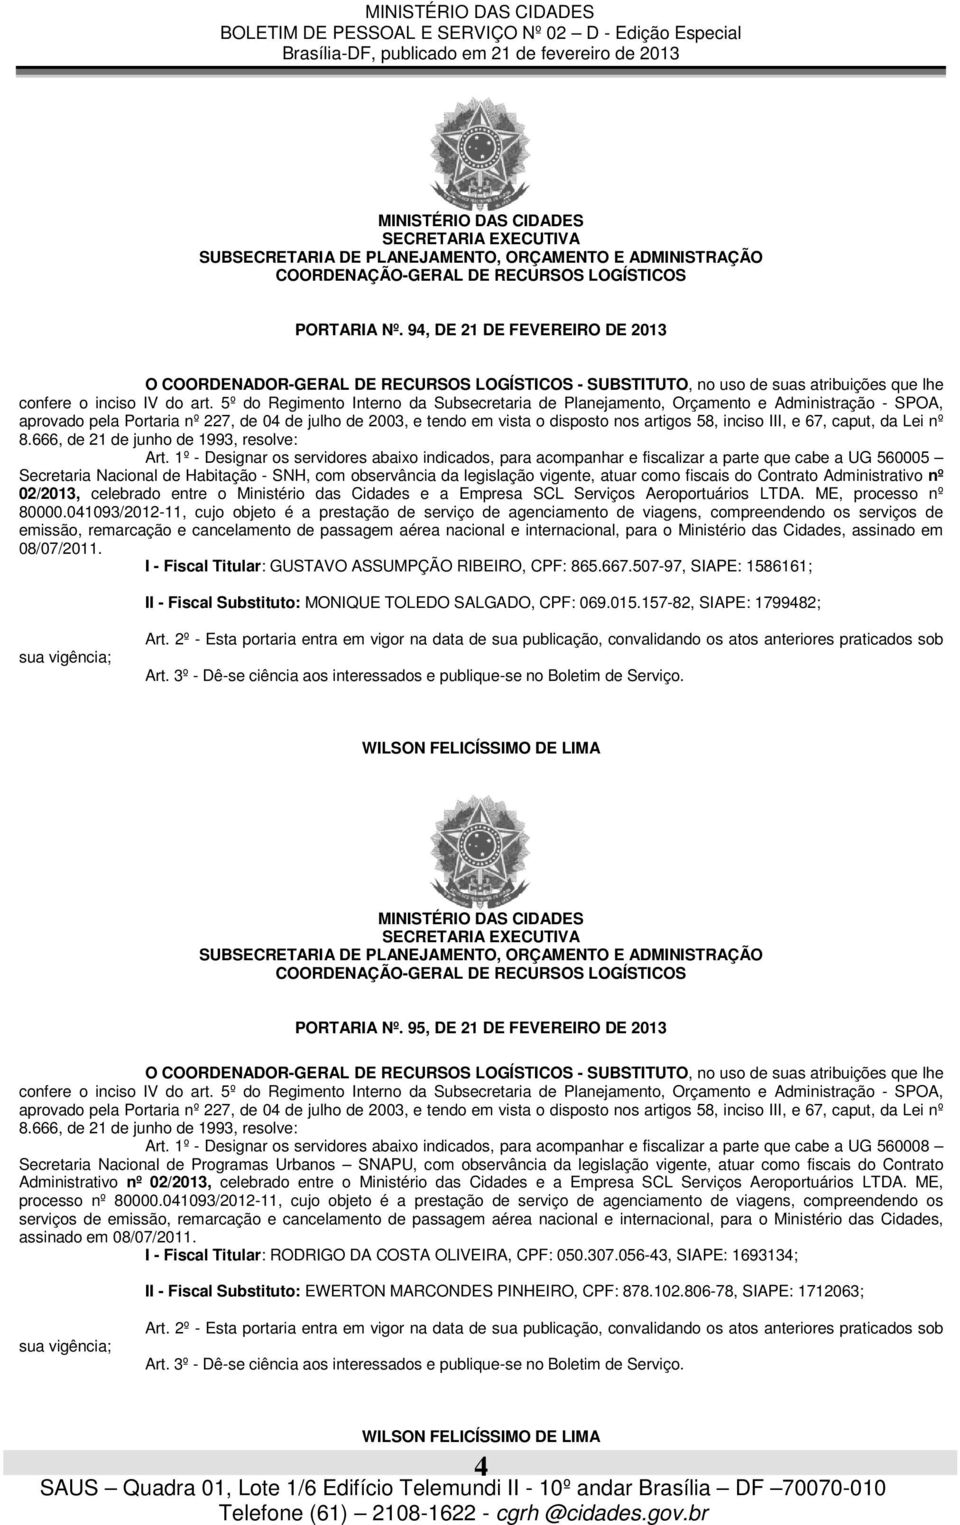 fiscais do Contrato Administrativo nº 02/2013, celebrado entre o Ministério das Cidades e a Empresa SCL Serviços Aeroportuários LTDA. ME, processo nº 80000.